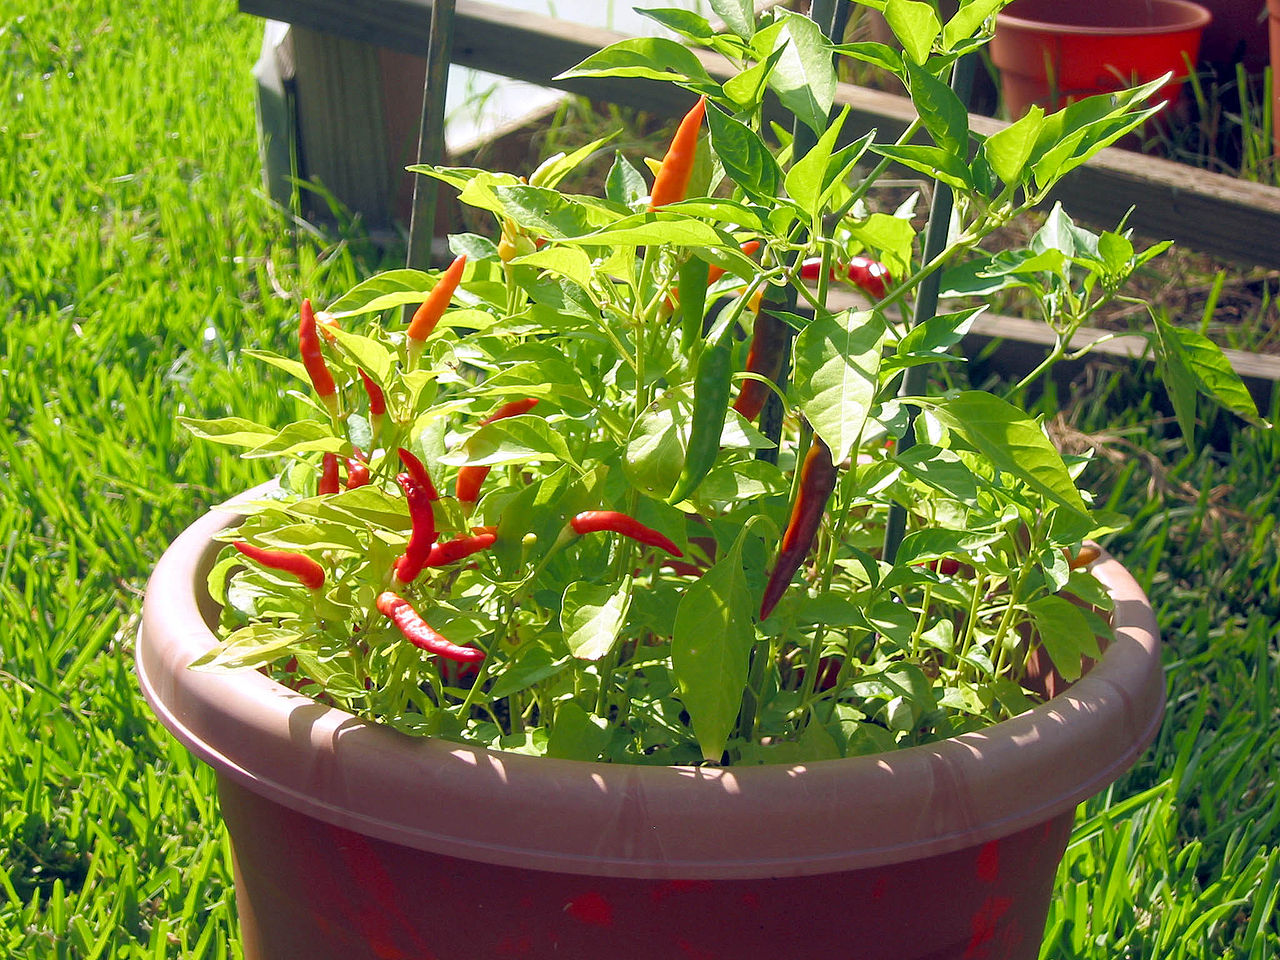 3. Piri Piri - Red devil peppers